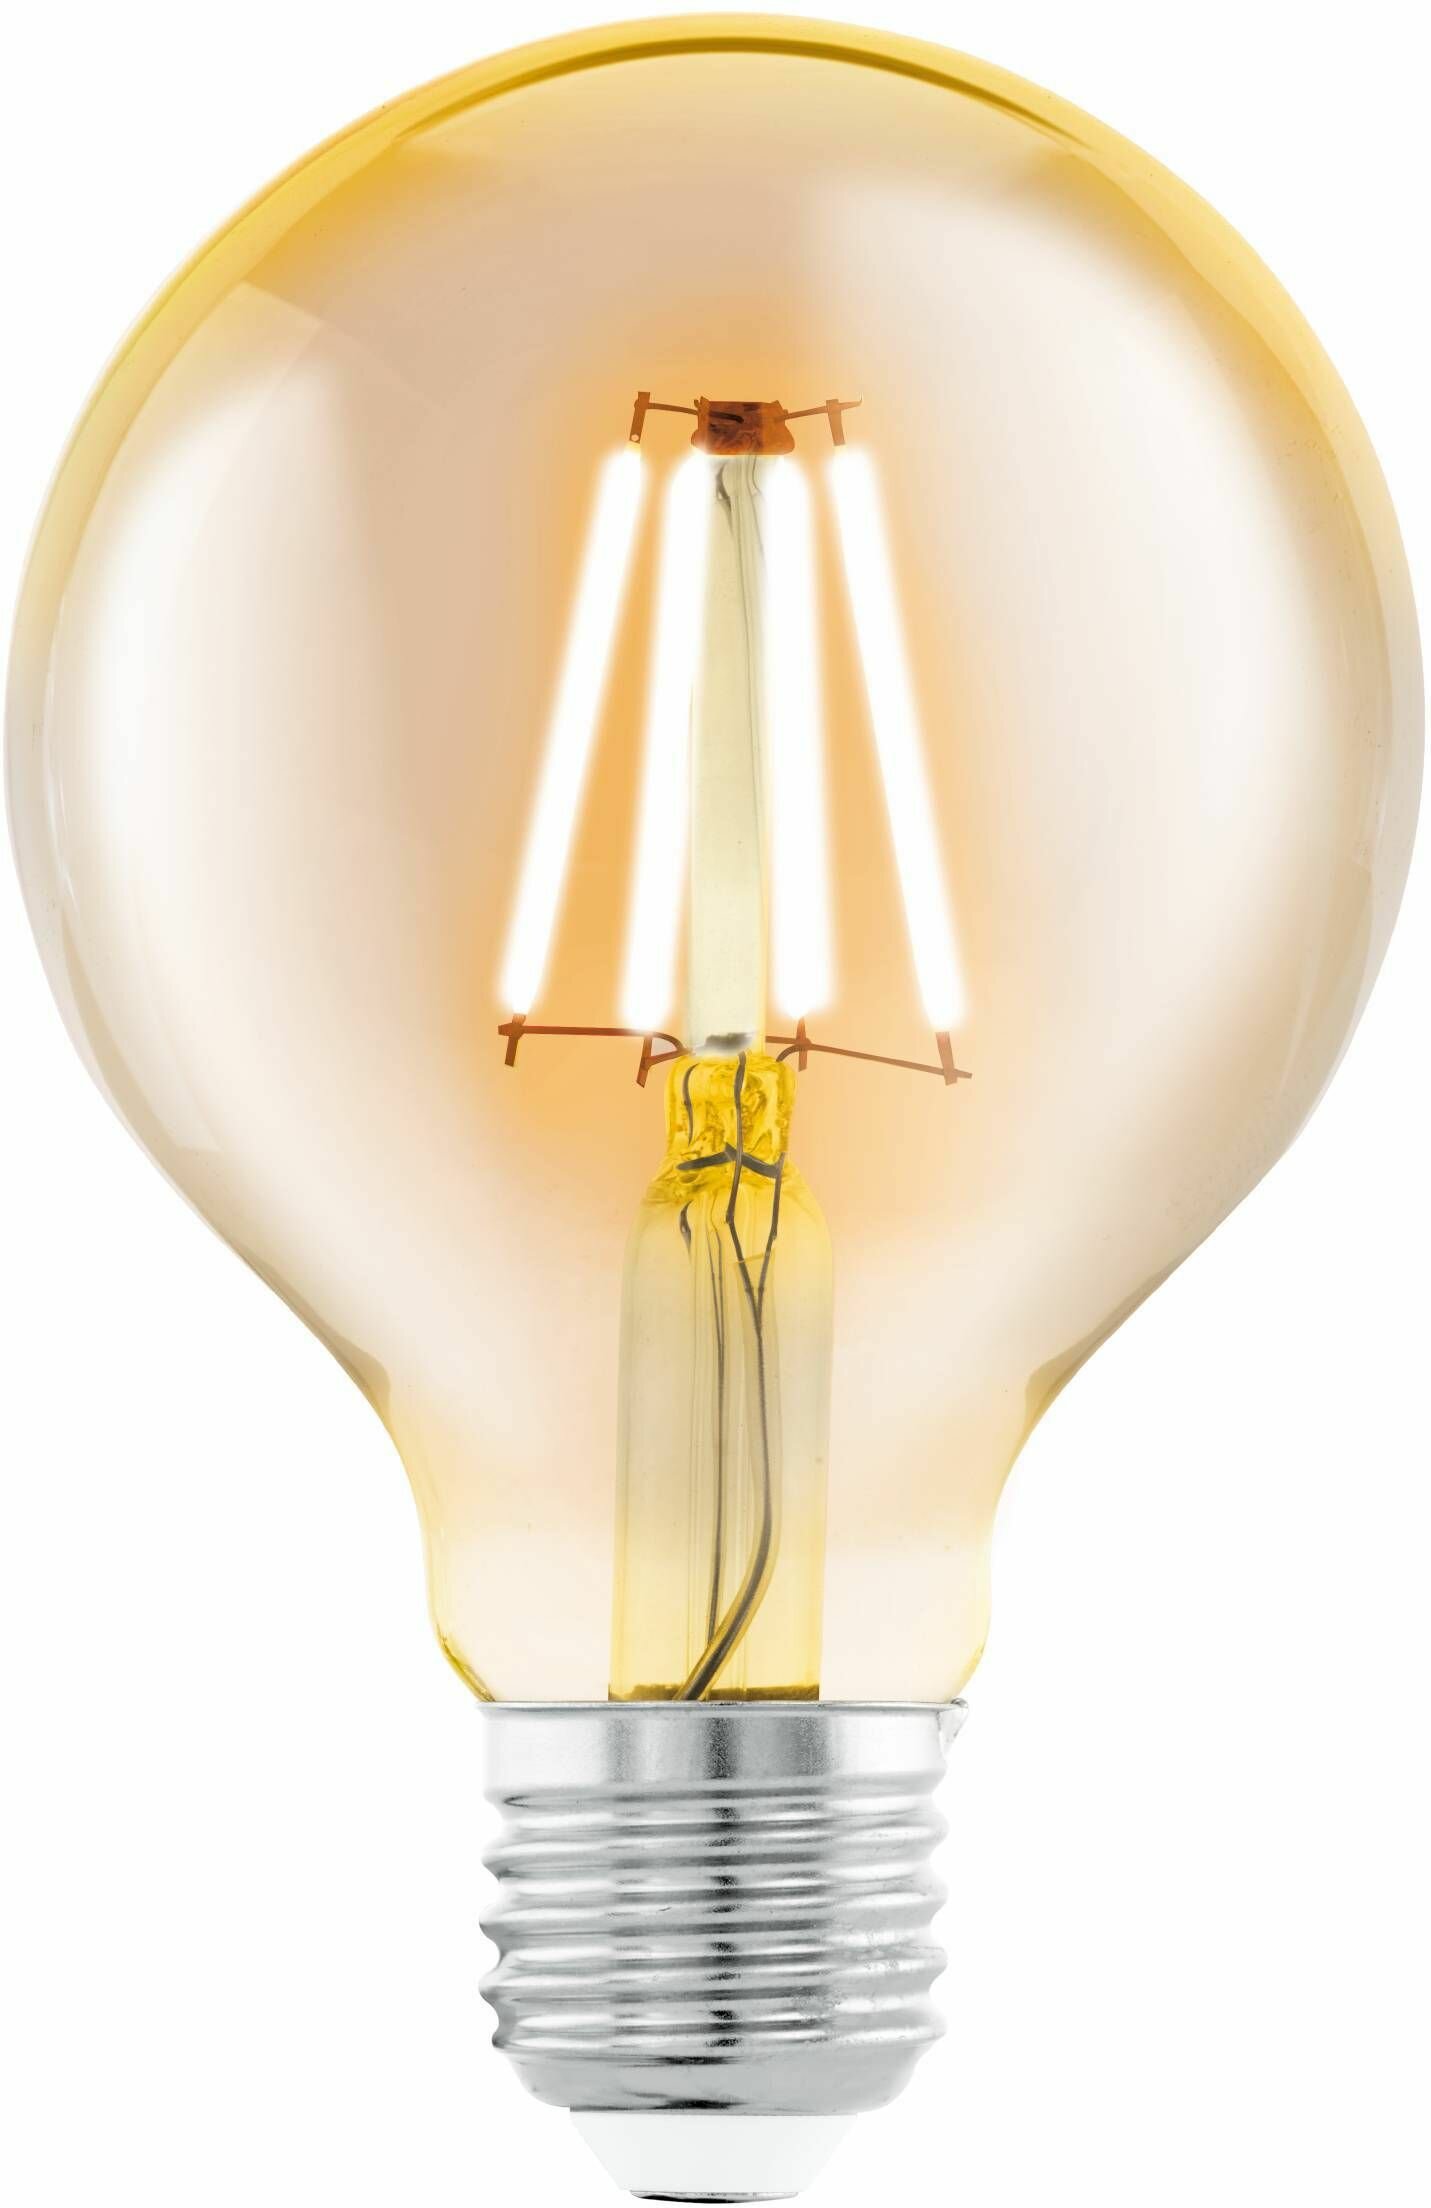 Светодиодная лампа филаментная G80, 4W (E27), L125, 2200K, 330lm, янтарь